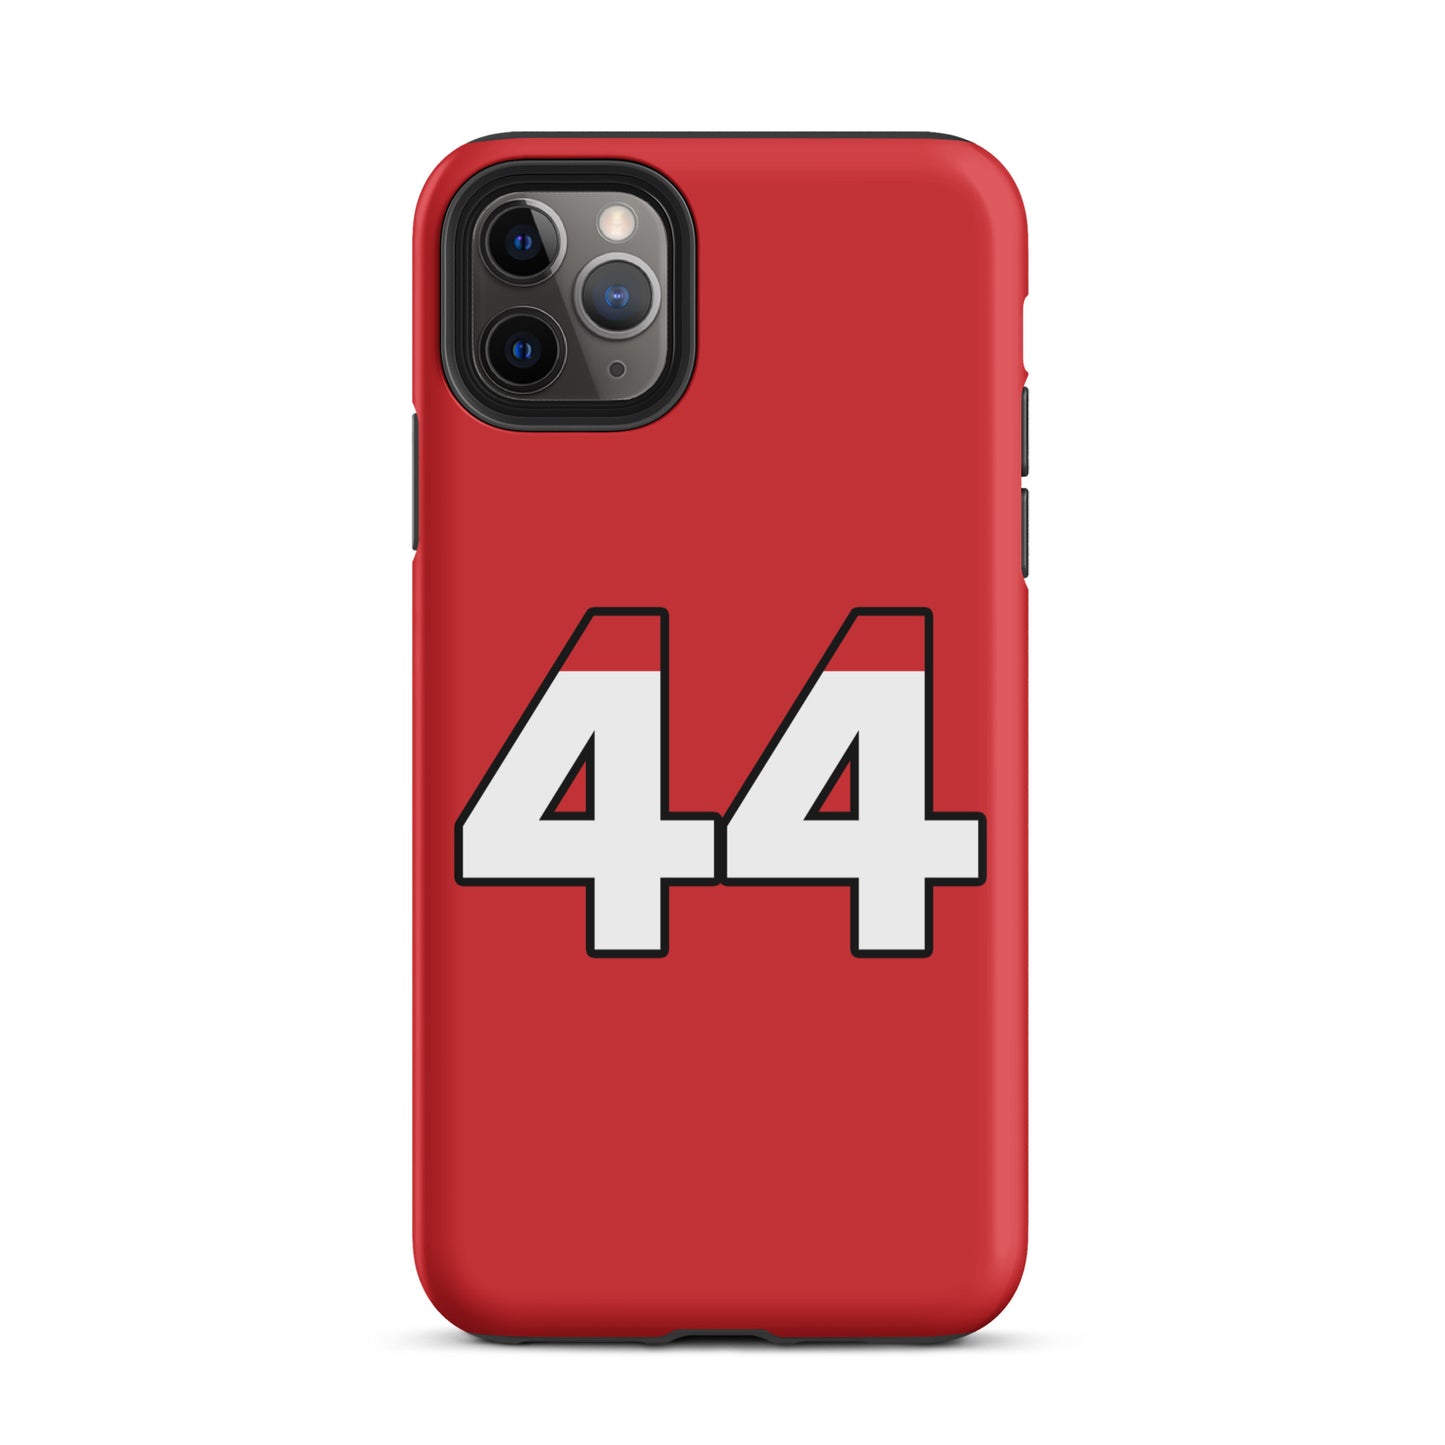 Lewis Hamilton Ferrari Tough iPhone 11 pro max case